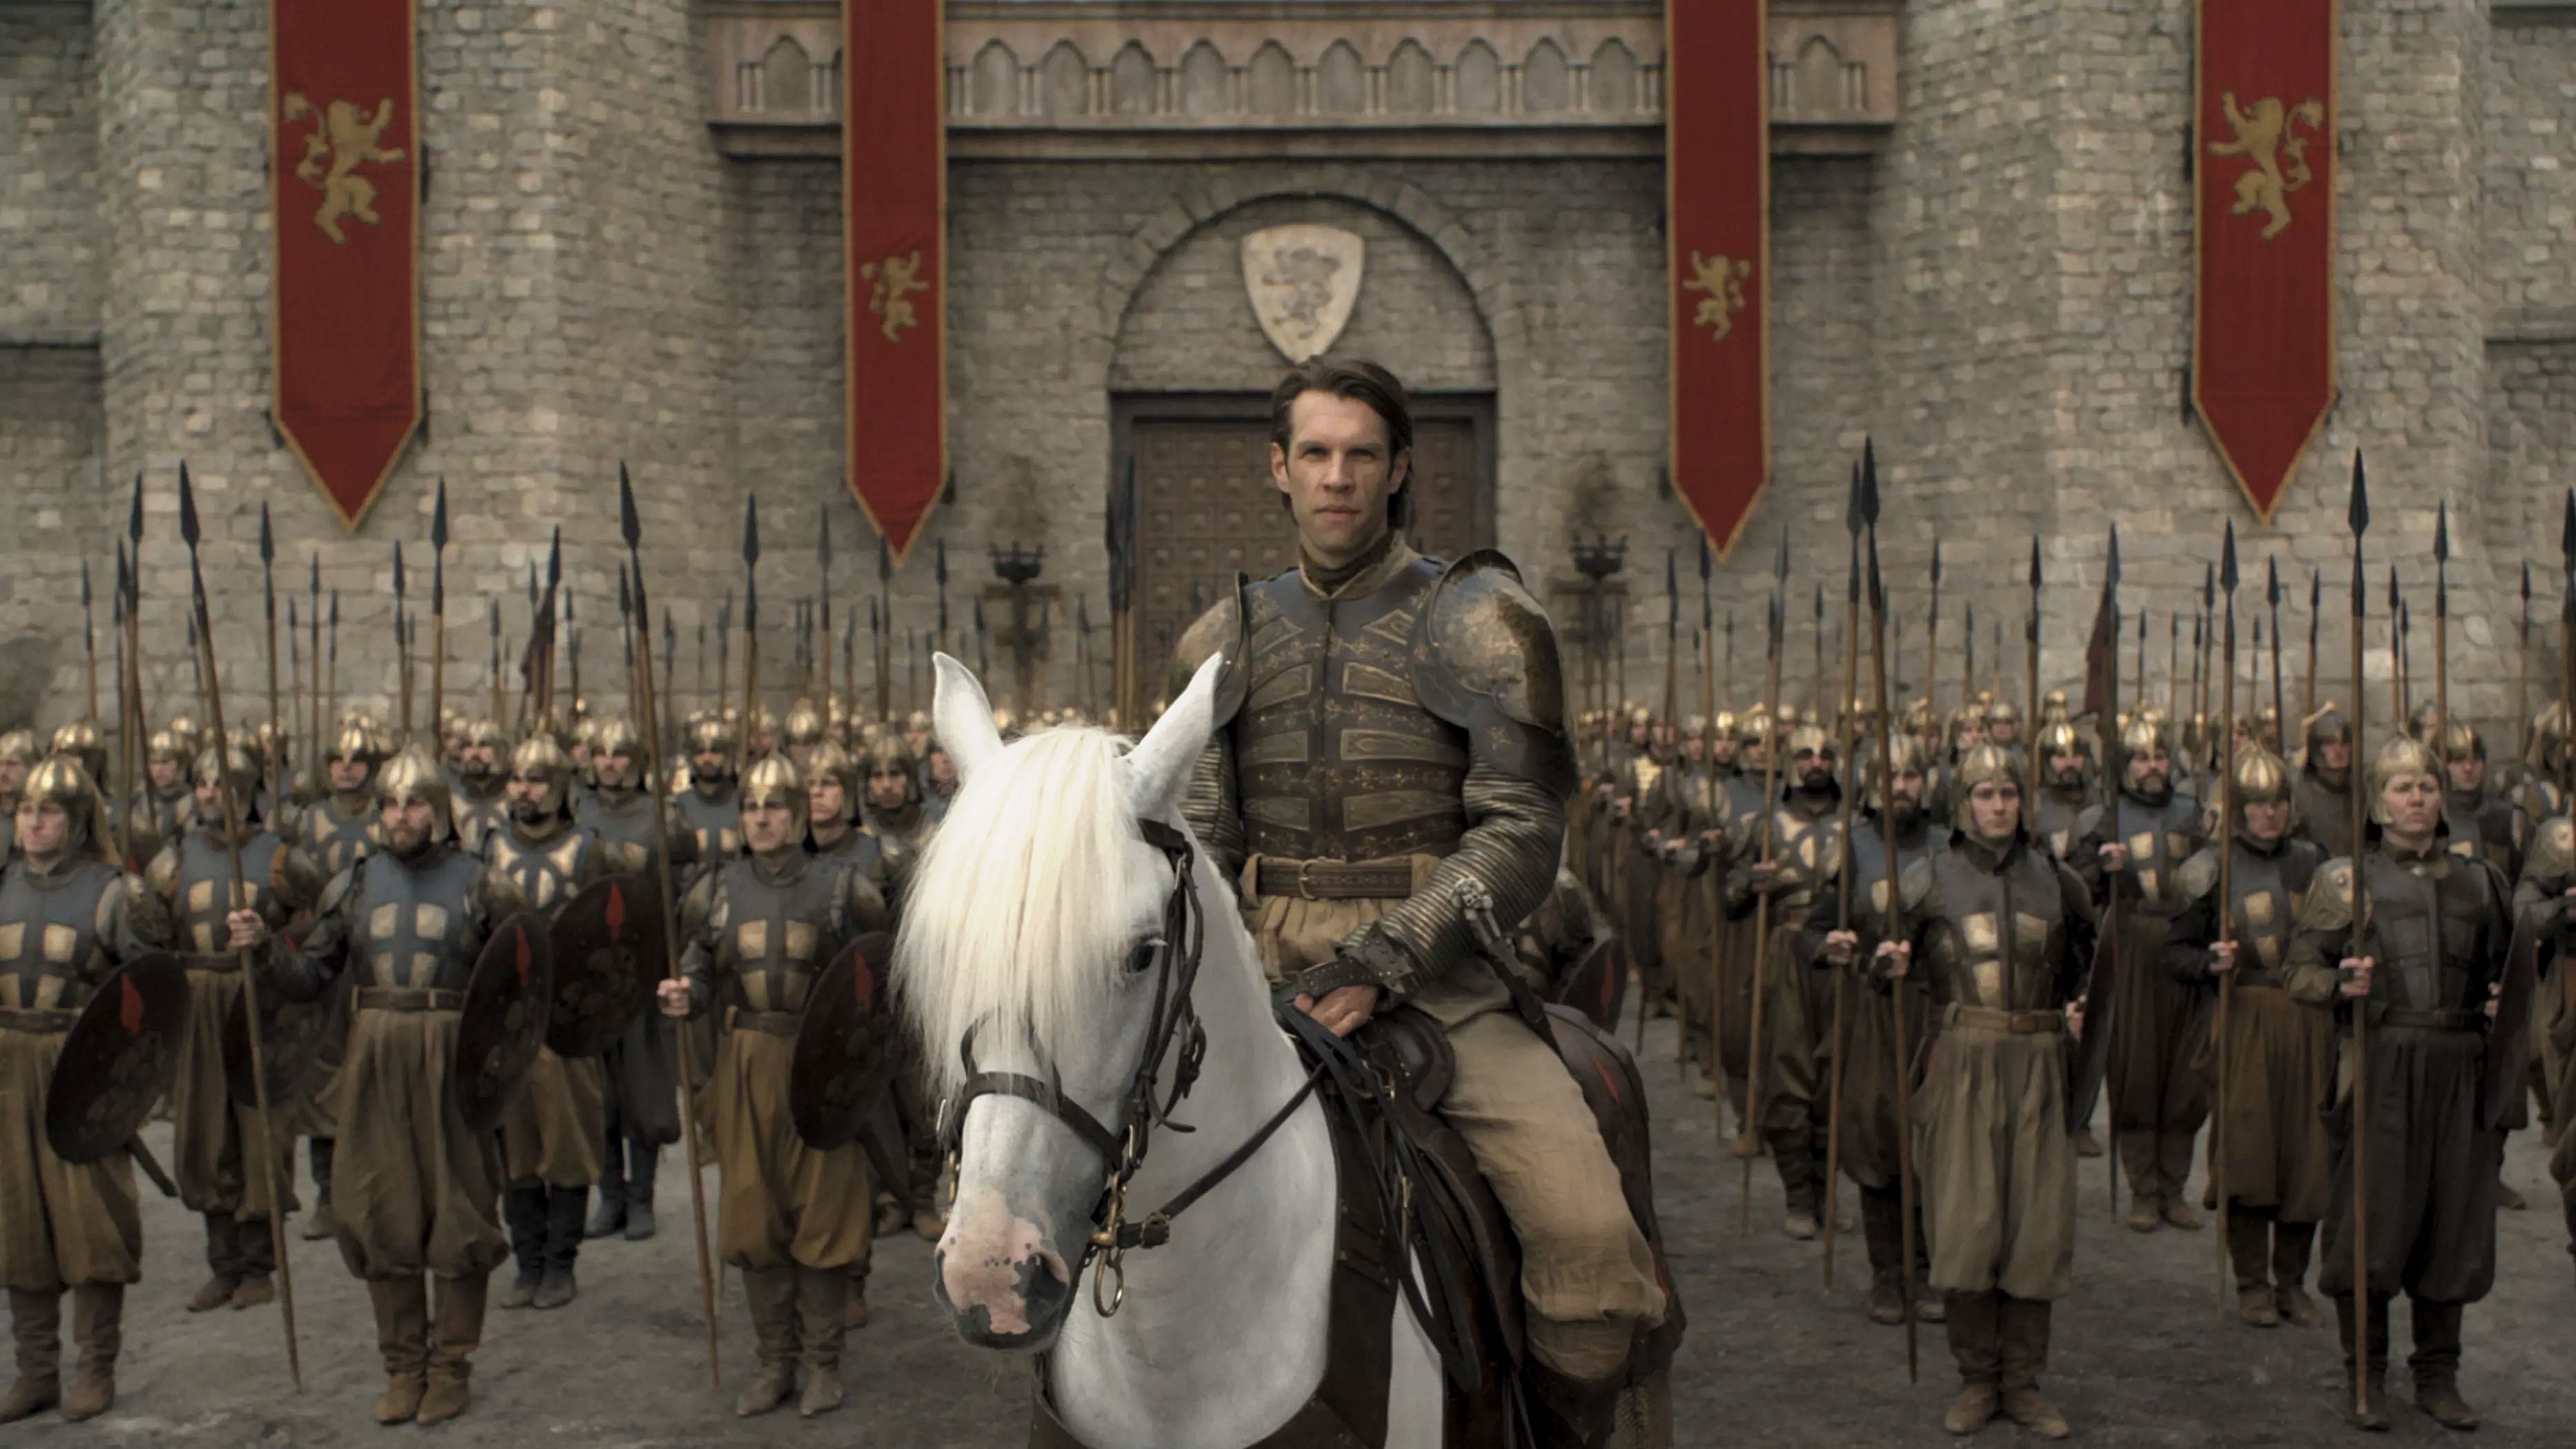 Game of Thrones Season 8 Episode 5 Images Tease War In King’s Landing